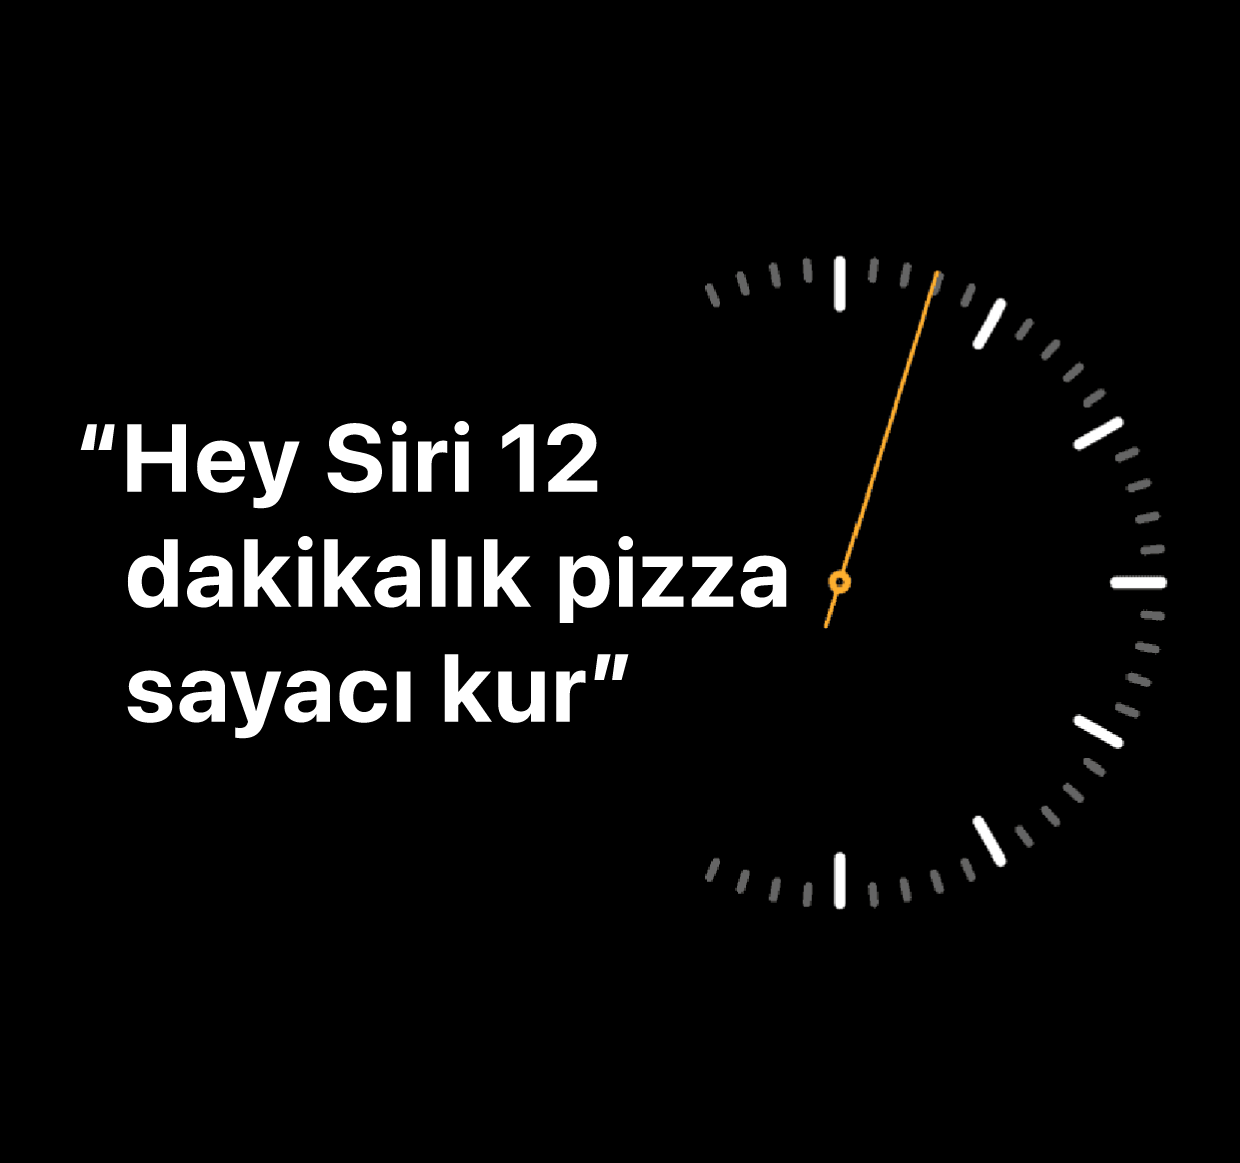 “Hey Siri, 12 dakikalık pizza sayacı kur” sözcüklerinin gösterildiği bir resim.